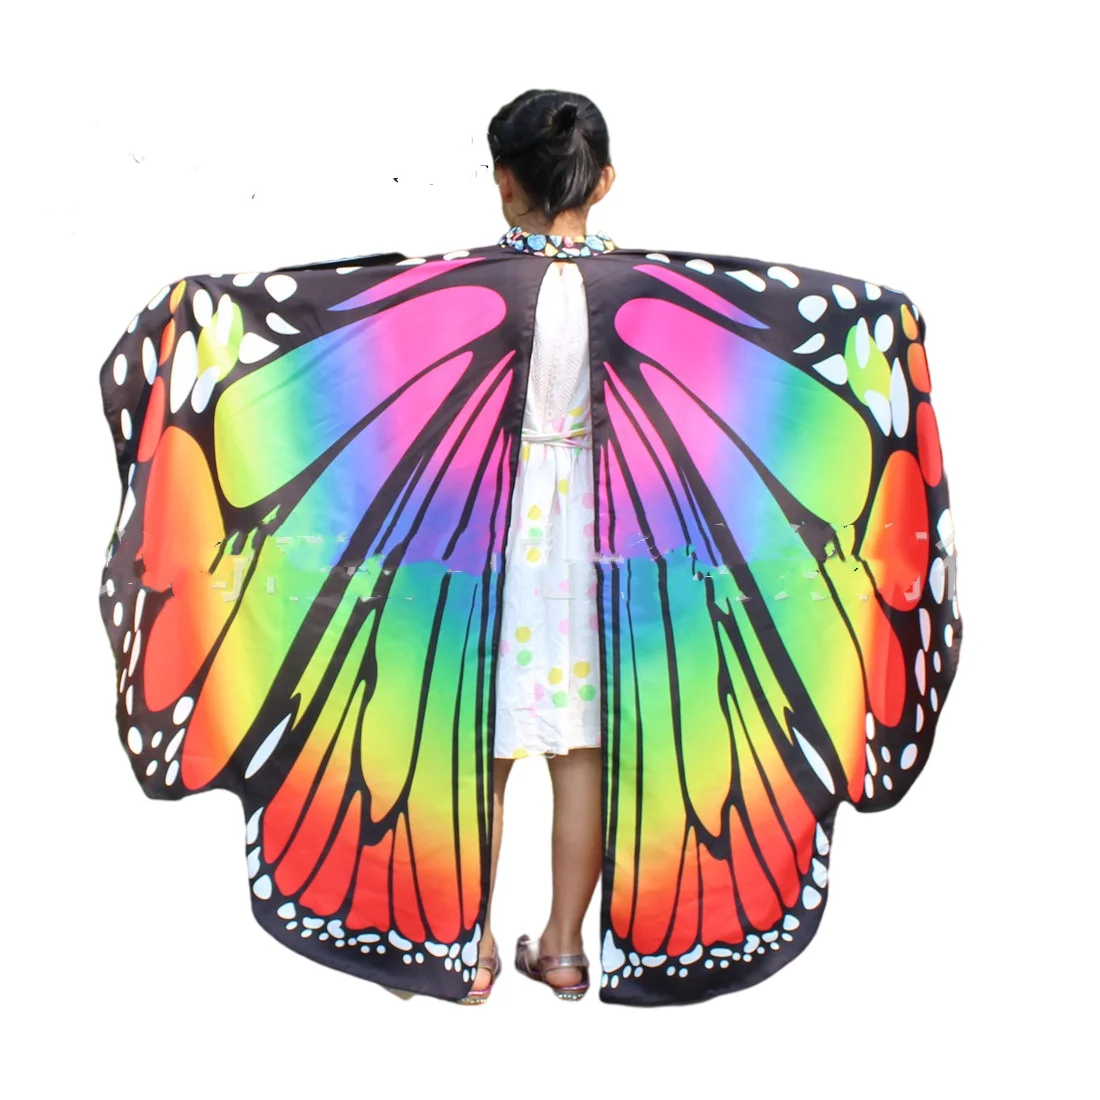 Châle en Tissu Doux avec Ailes de Papillon pour Enfant, Accessoire de Costume de Nymphe, Pixie, Déguisement pour Fille, Imprimé Coloré